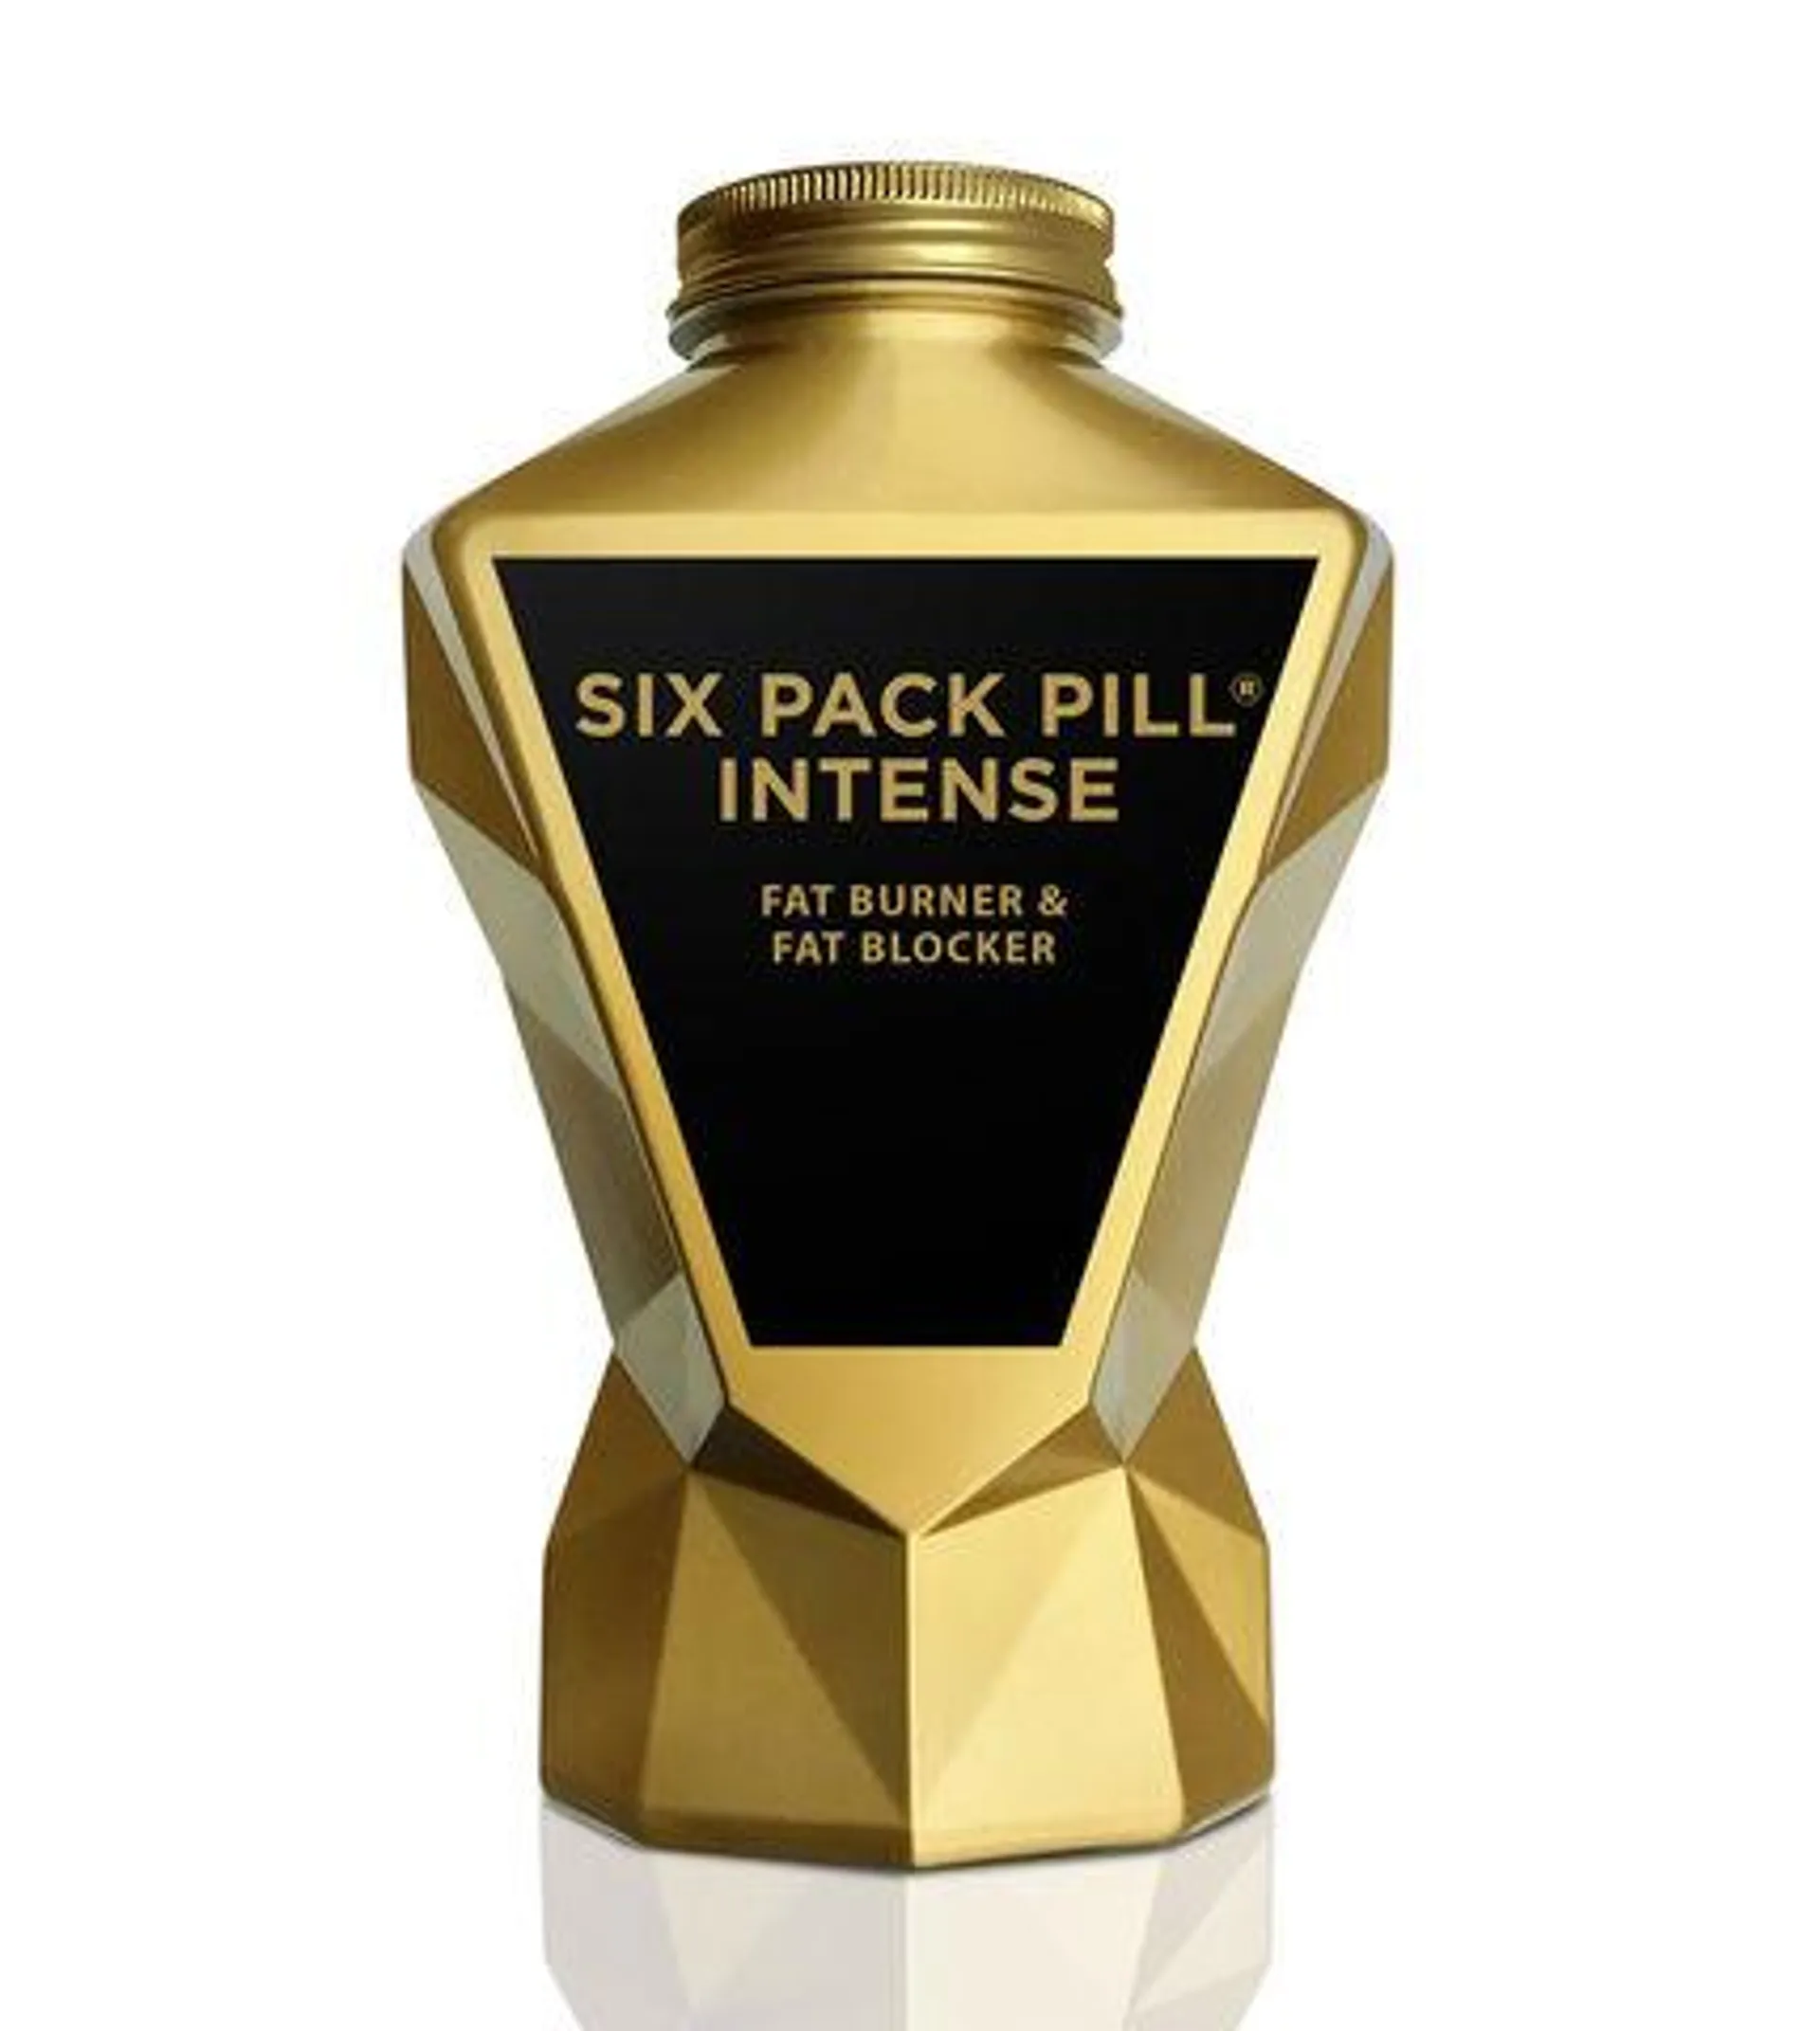 Six Pack Pill® Intense